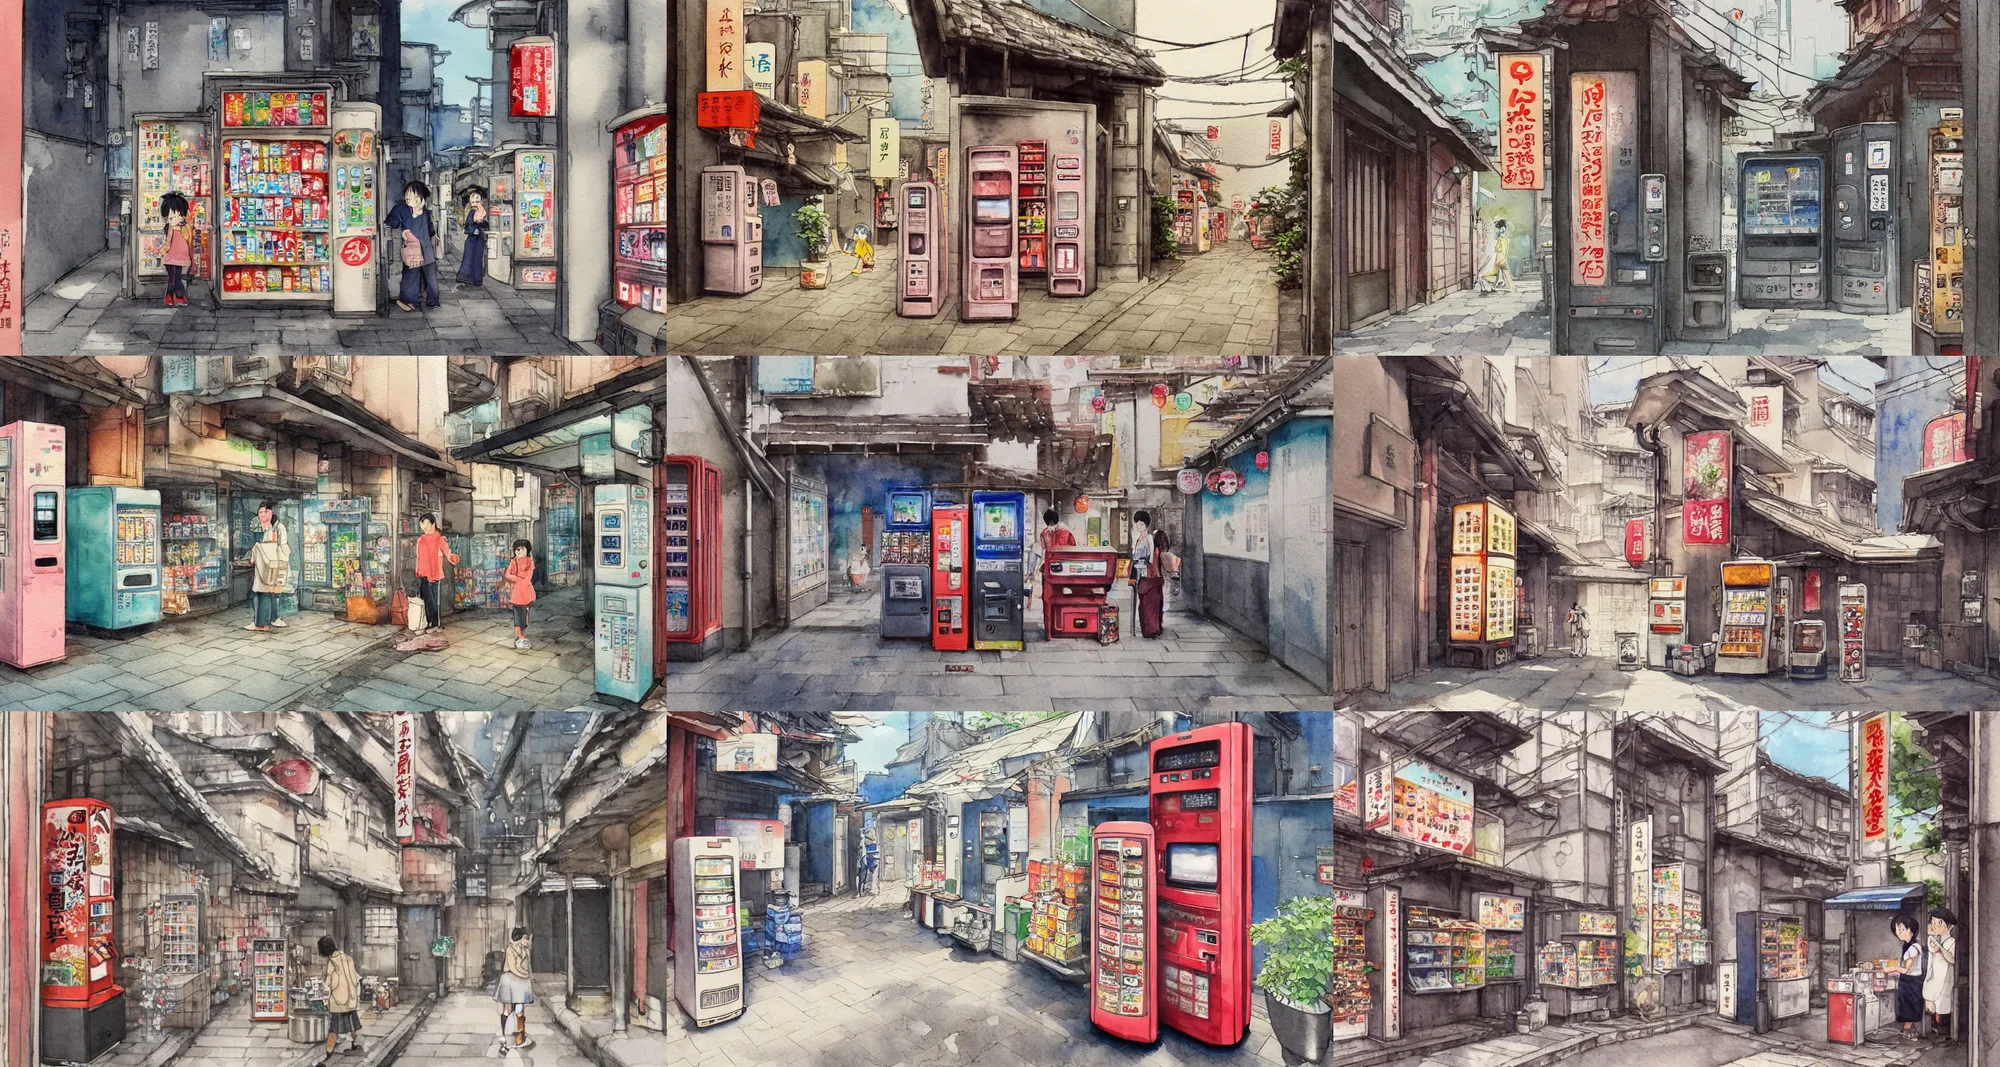 Prompt: beautiful watercolor painting of japanese alleyway with vending machine, by mateusz urbanowicz, hayao miyazki, mamoru hosoda